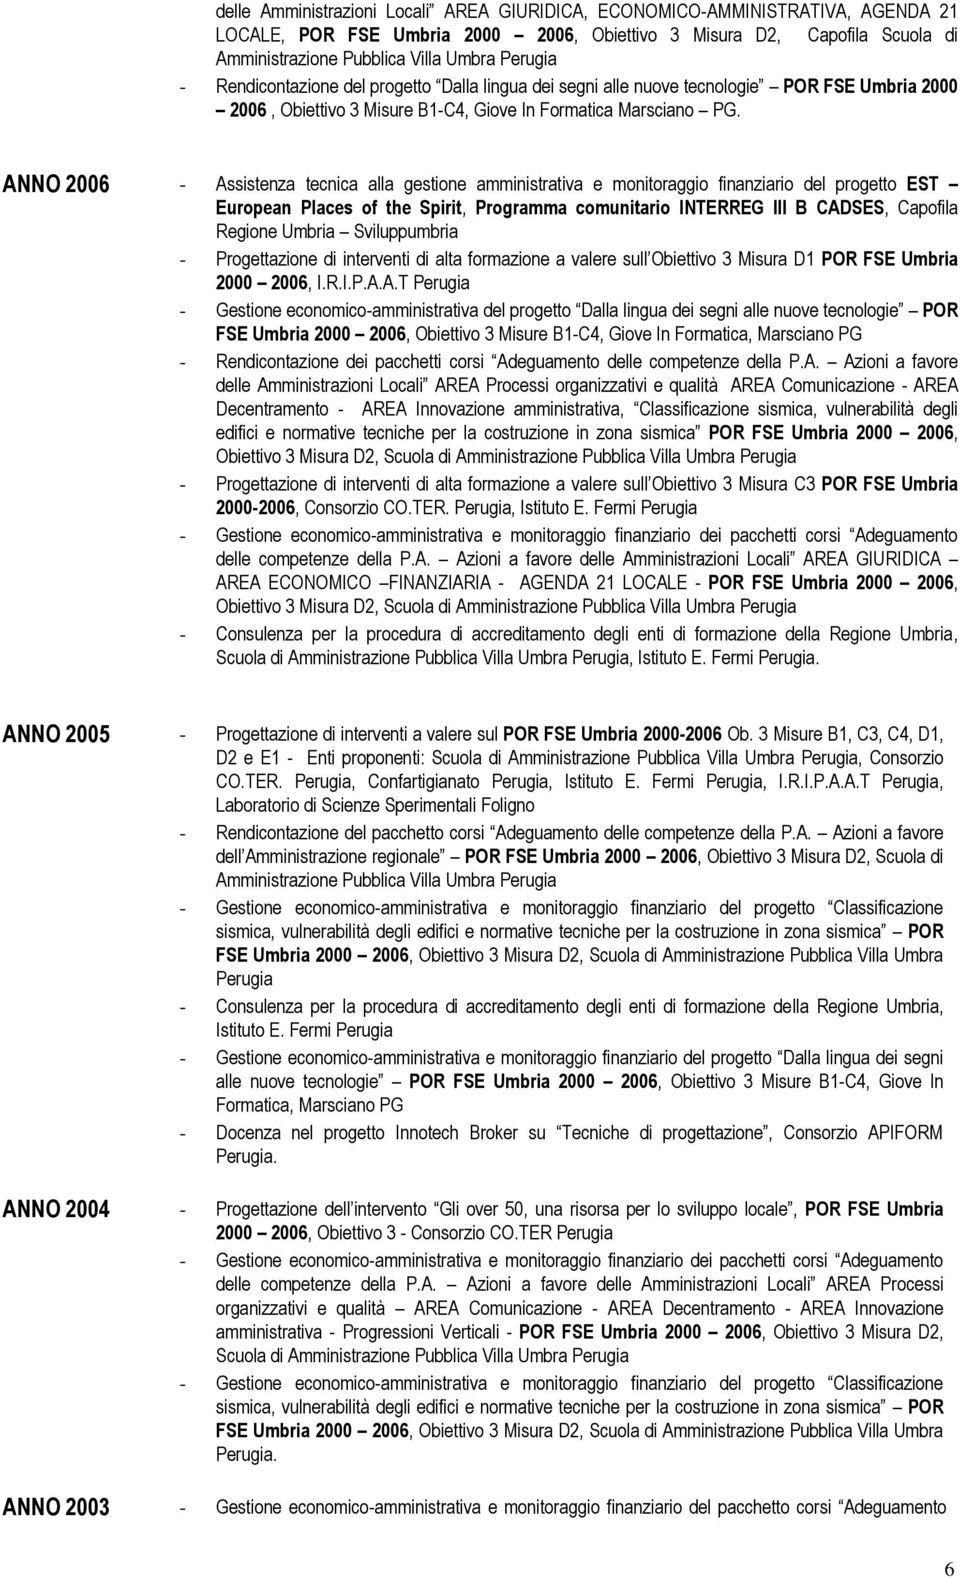 ANNO 2006 - Assistenza tecnica alla gestione amministrativa e monitoraggio finanziario del progetto EST European Places of the Spirit, Programma comunitario INTERREG III B CADSES, Capofila Regione